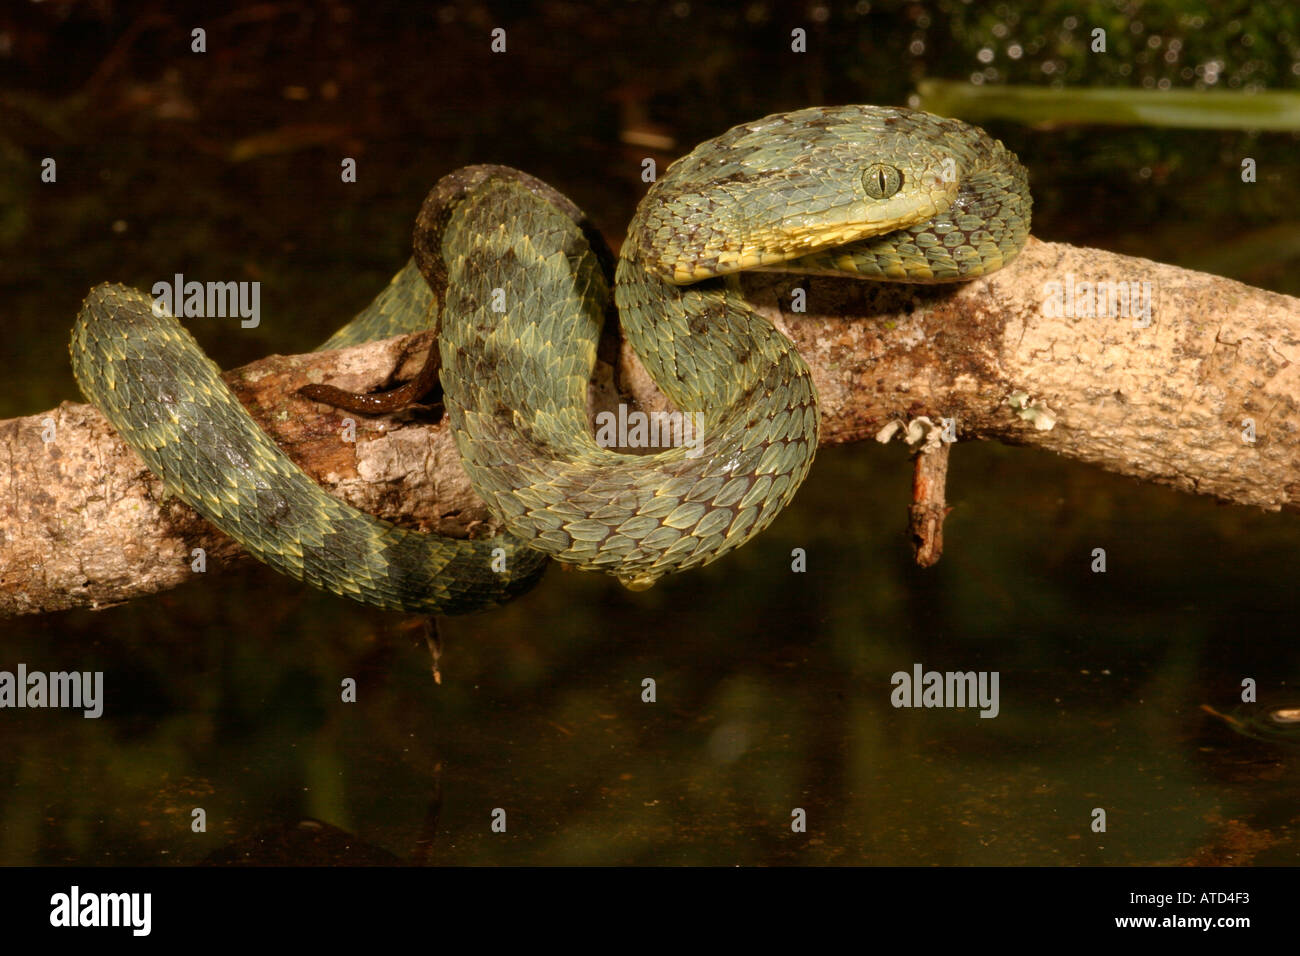 Bush Viper Snake Stock Photo